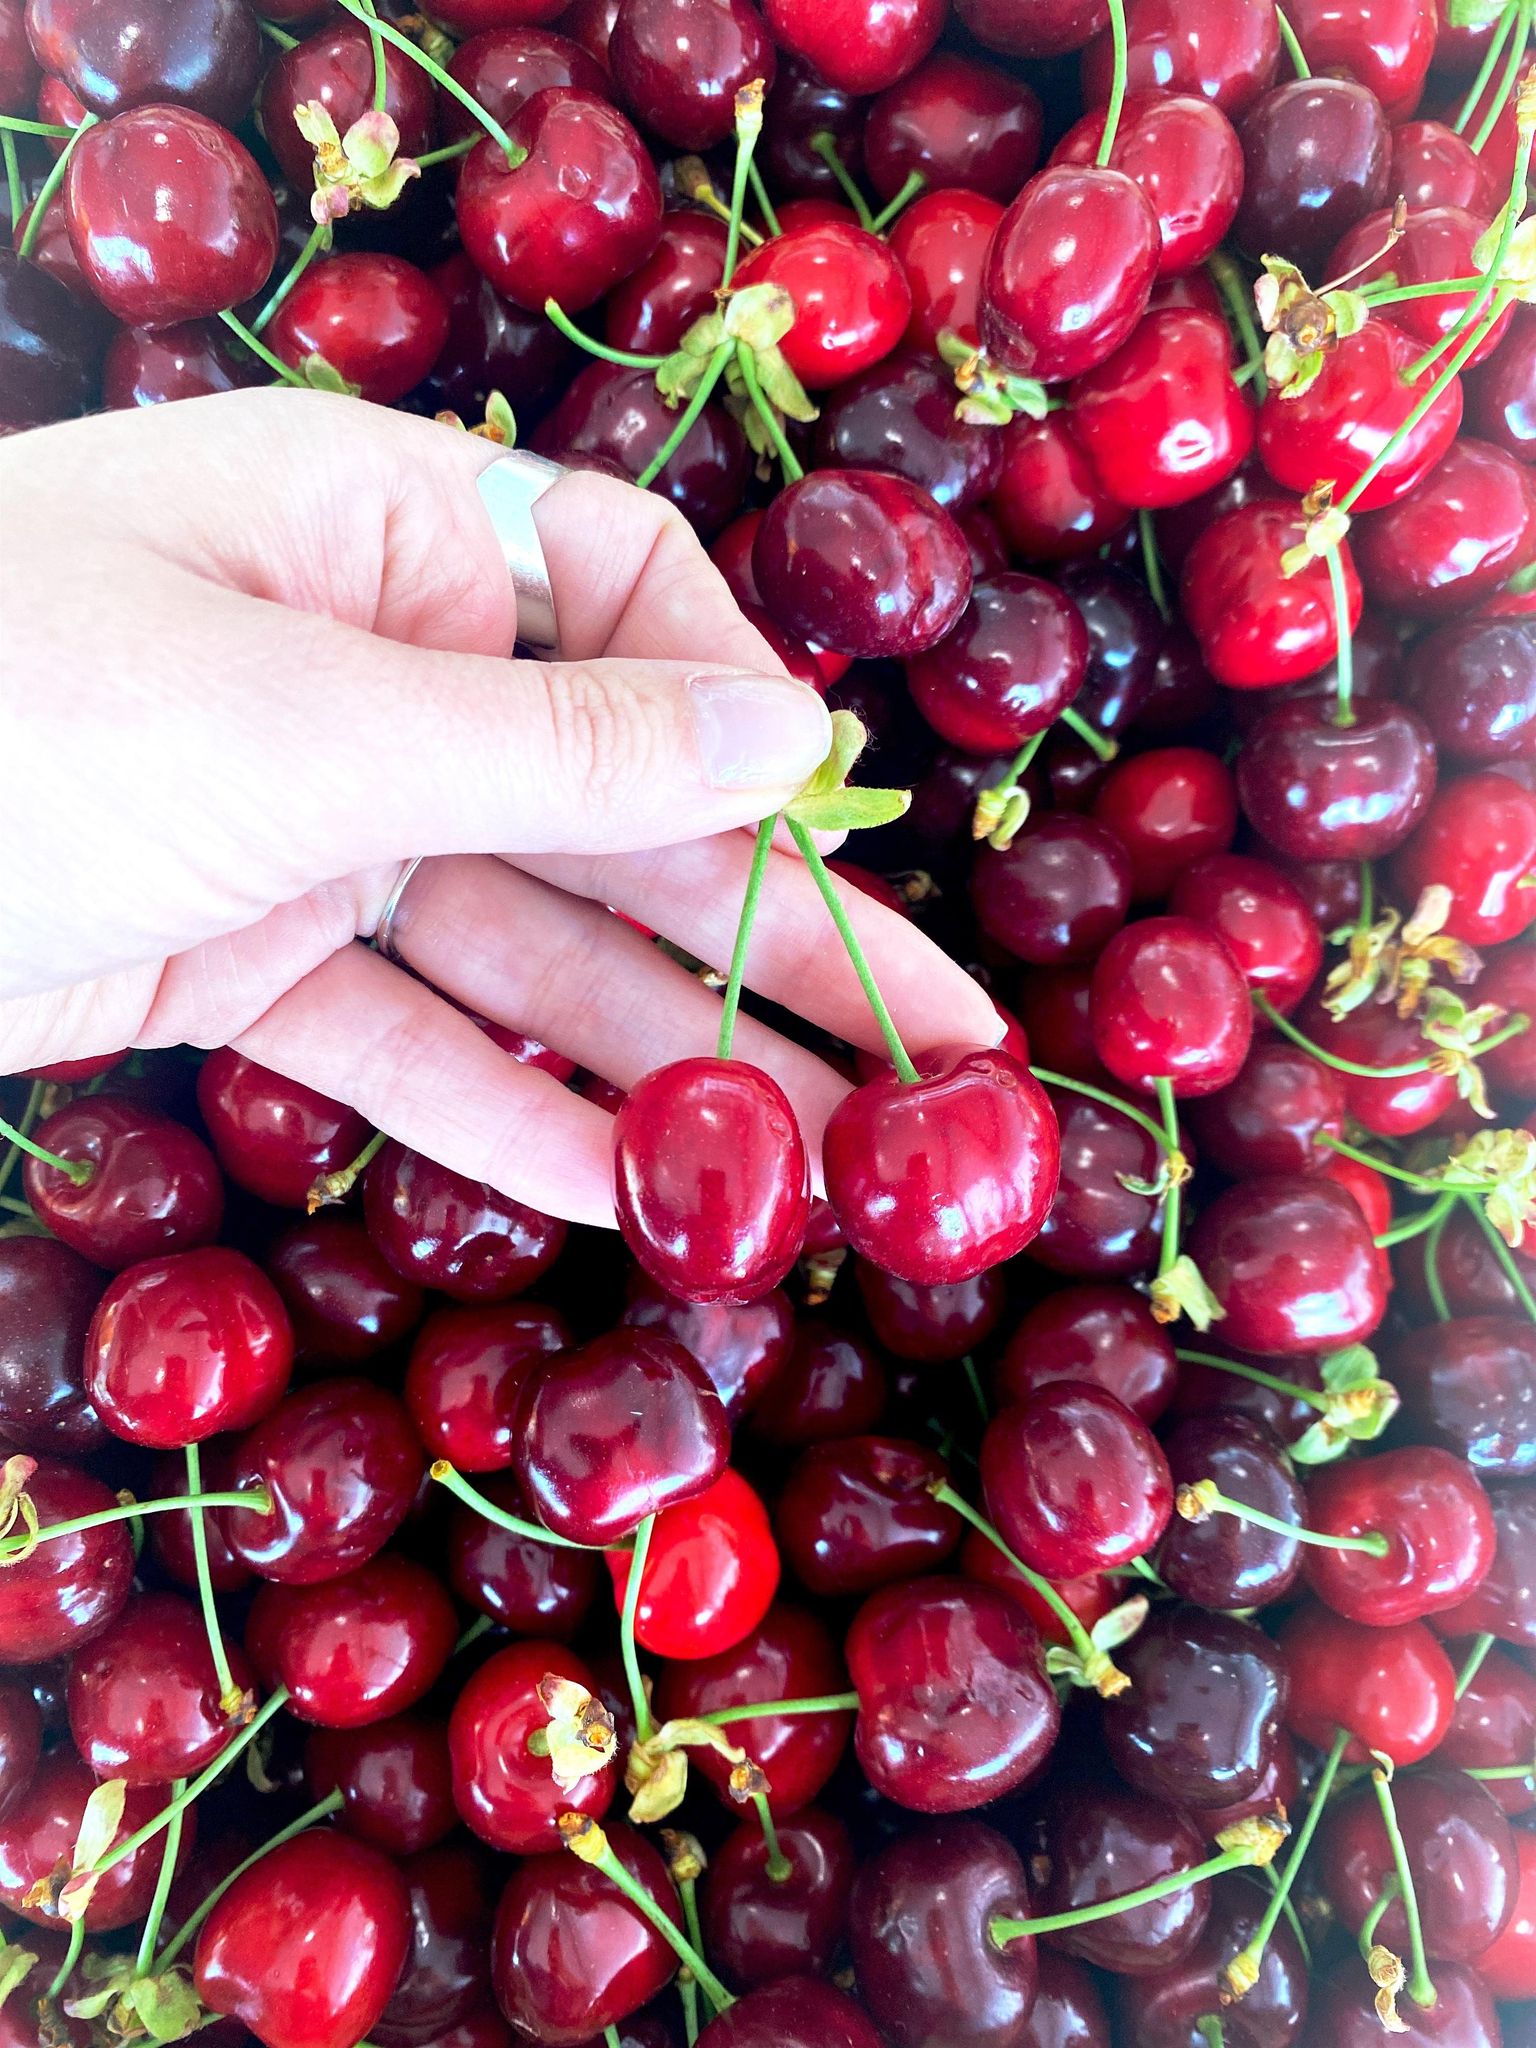 Le retour de la saisone estivale, annonce aussi celle des beaux fruits  rouges : les cerises ! La cerise ouvre le bal des fruits à noyaux, c'est le  premier de l'année à